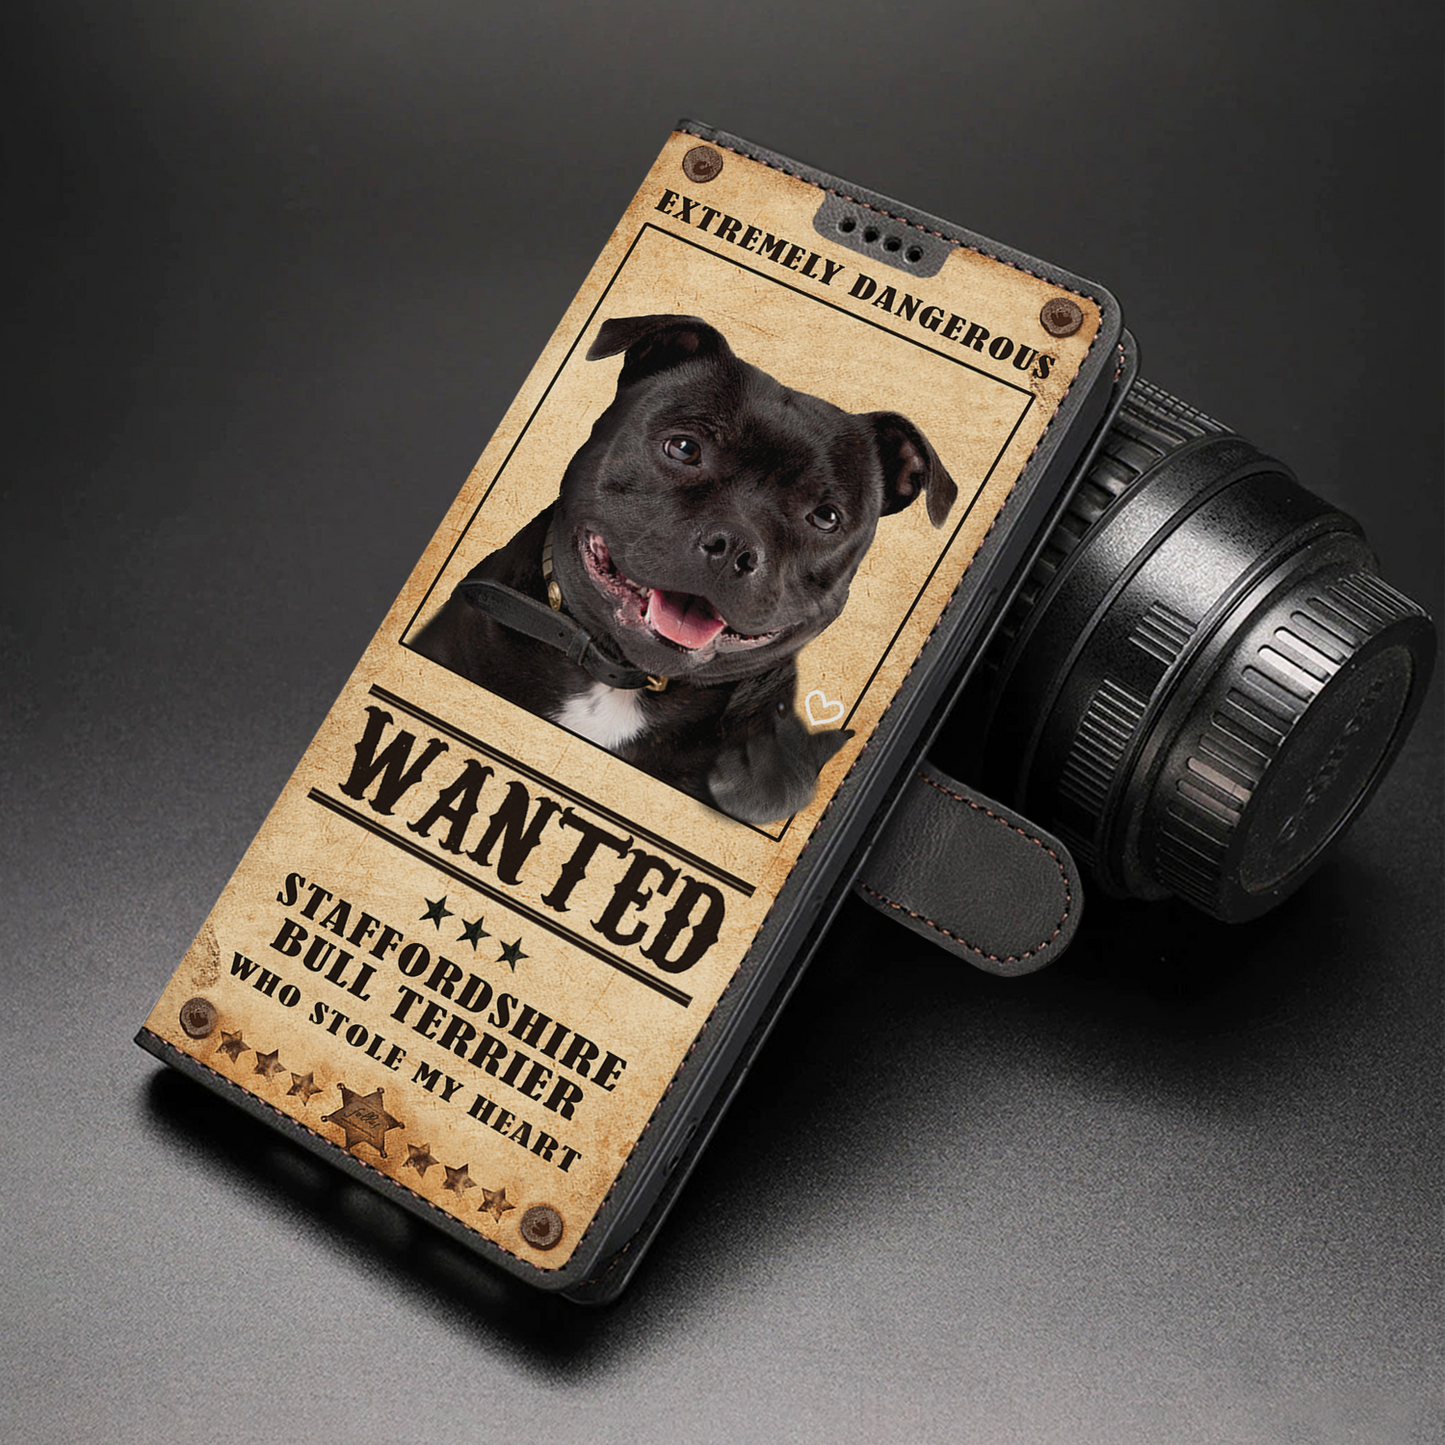 Heart Thief Staffordshire Bull Terrier - Étui portefeuille pour téléphone inspiré de l'amour V1